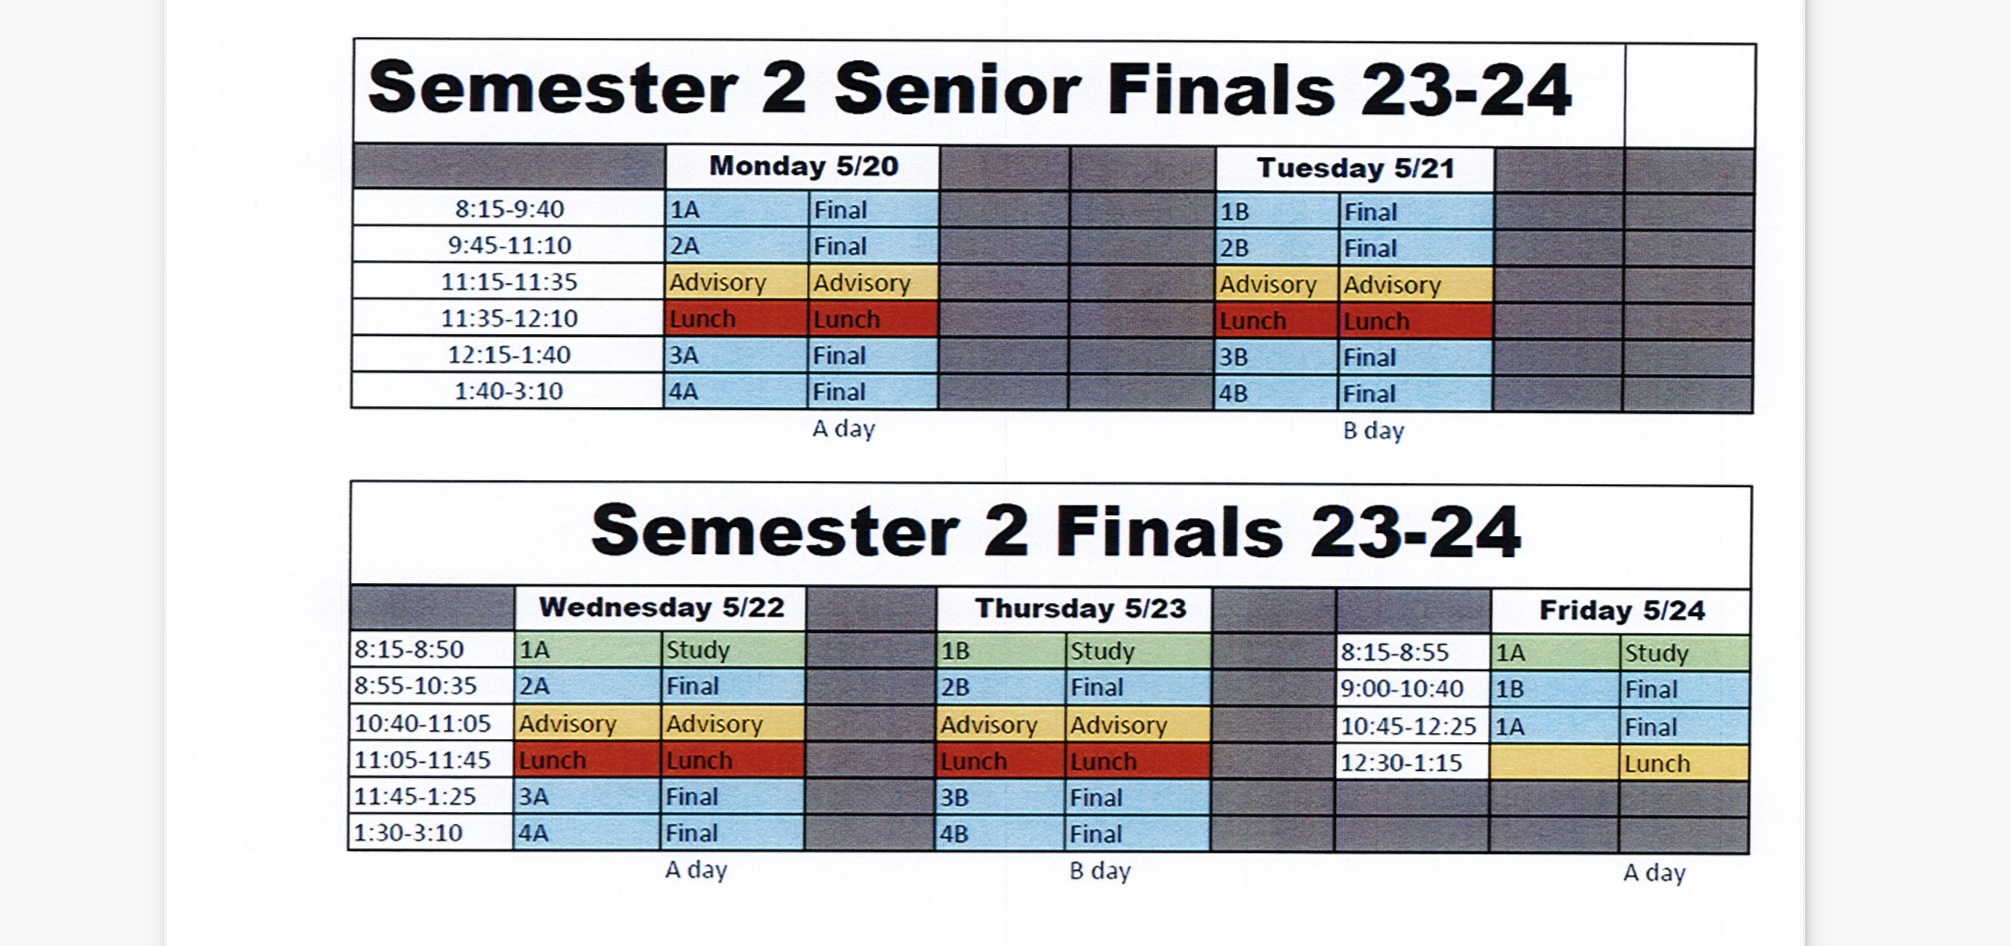 Finals schedule